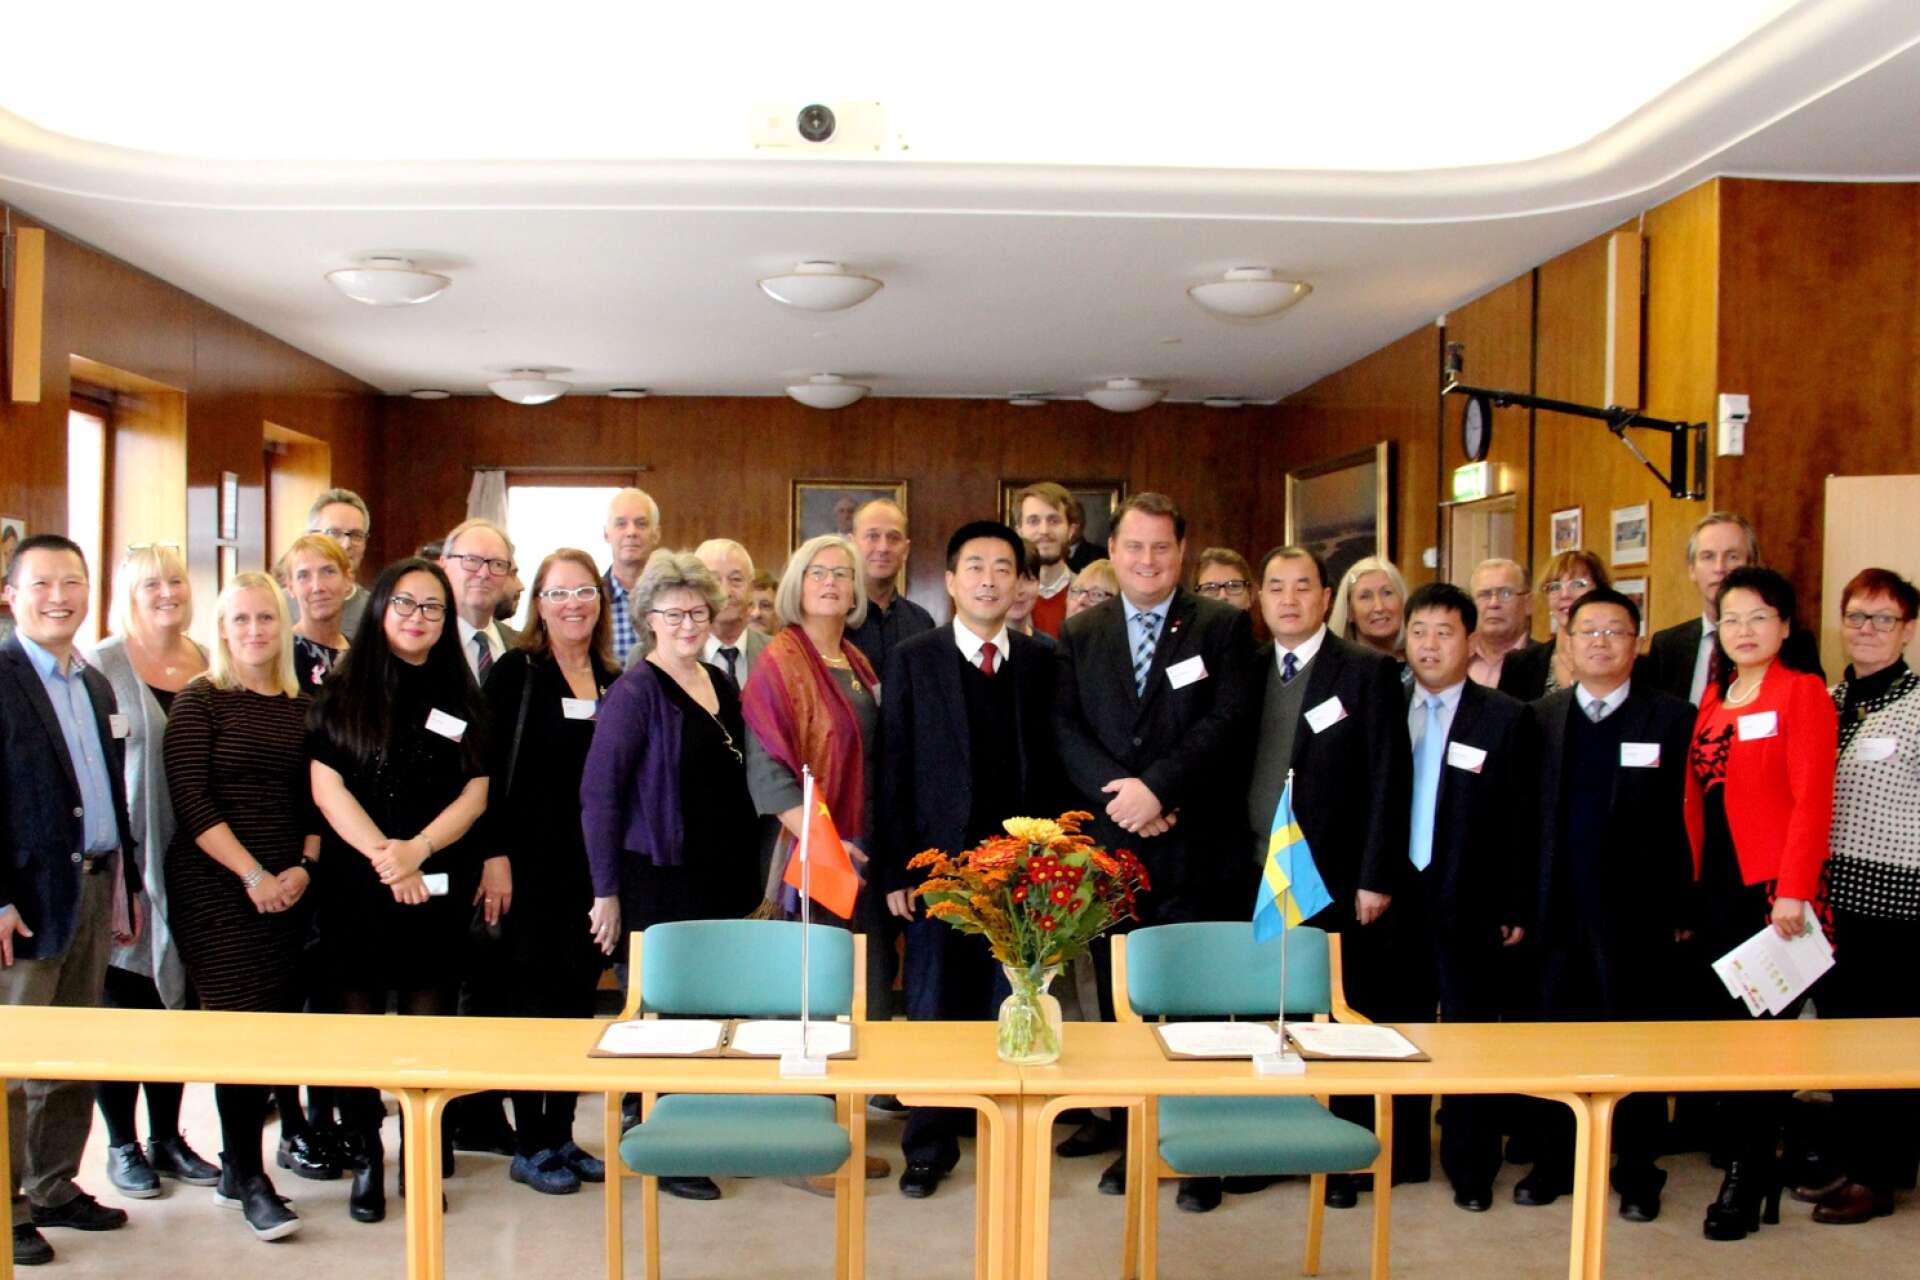 2015 besöktes Åmål av en delegation från sin då nya vänort Dunhuang i Kina. Nu vill kineserna återuppta utbytet men Åmål ser ut att nobba förslaget. 